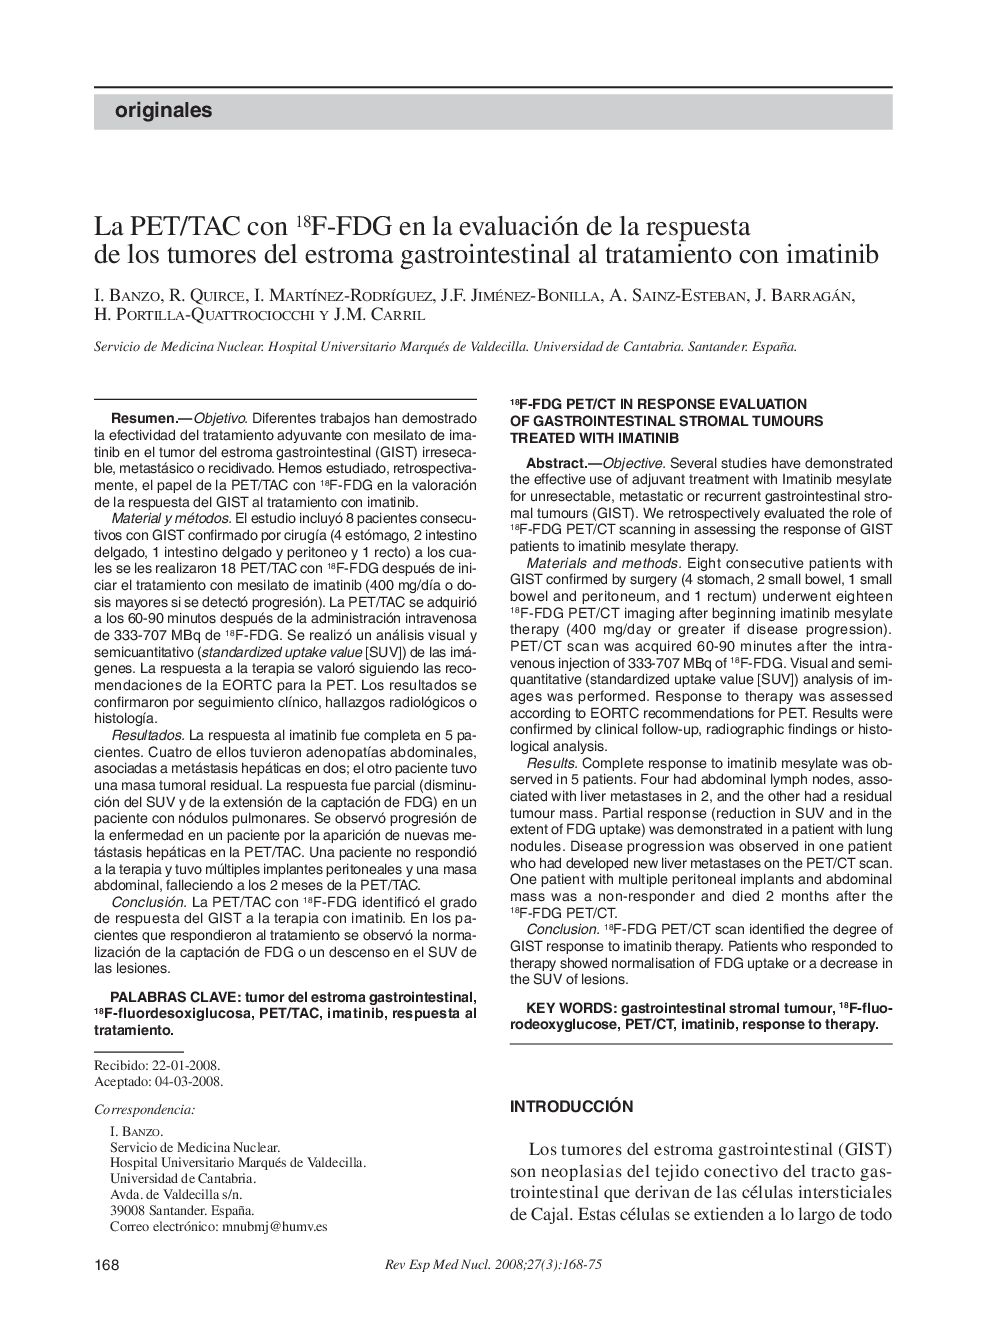 La PET/TAC con 18F-FDG en la evaluación de la respuesta de los tumores del estroma gastrointestinal al tratamiento con imatinib